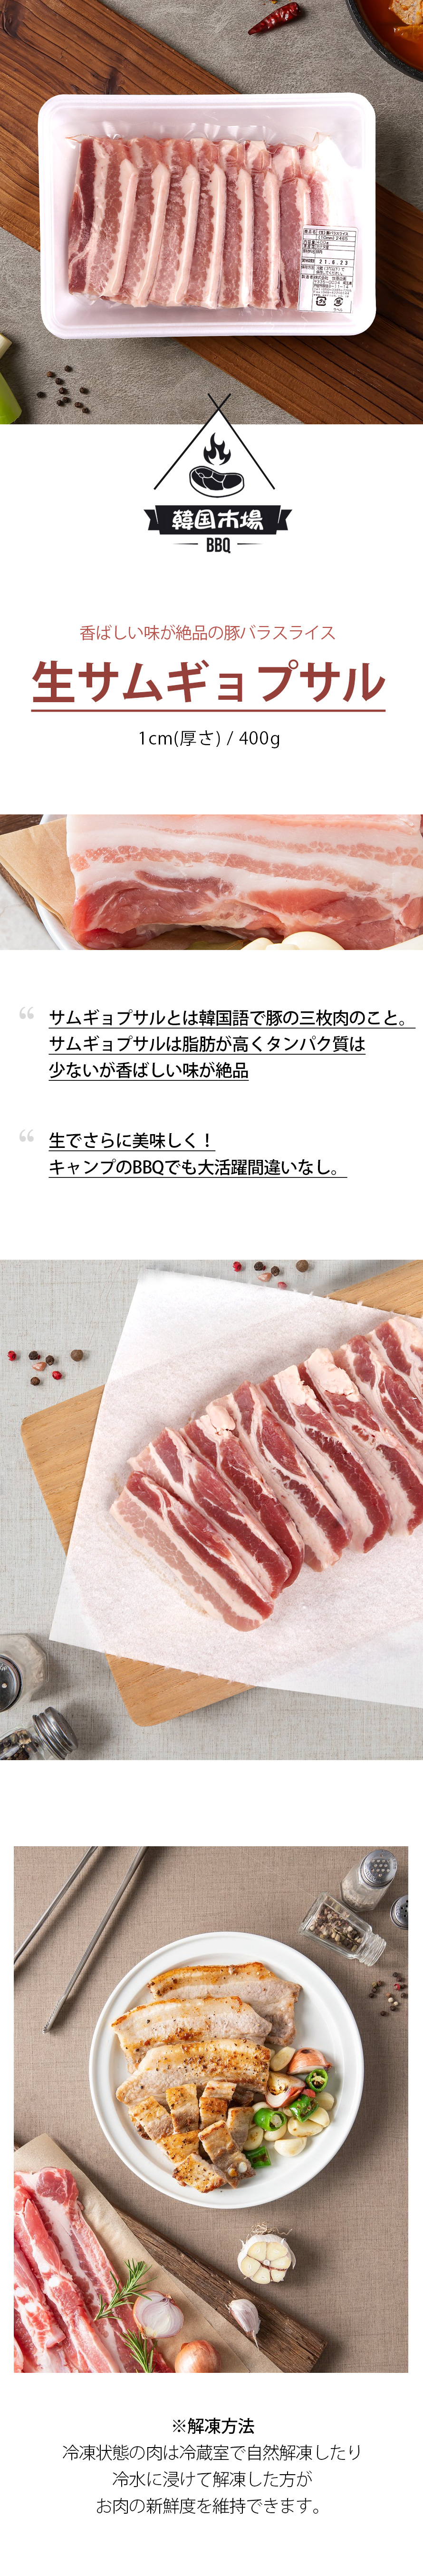 [冷]豚バラ肉スライス/約400g(厚さ1cm)